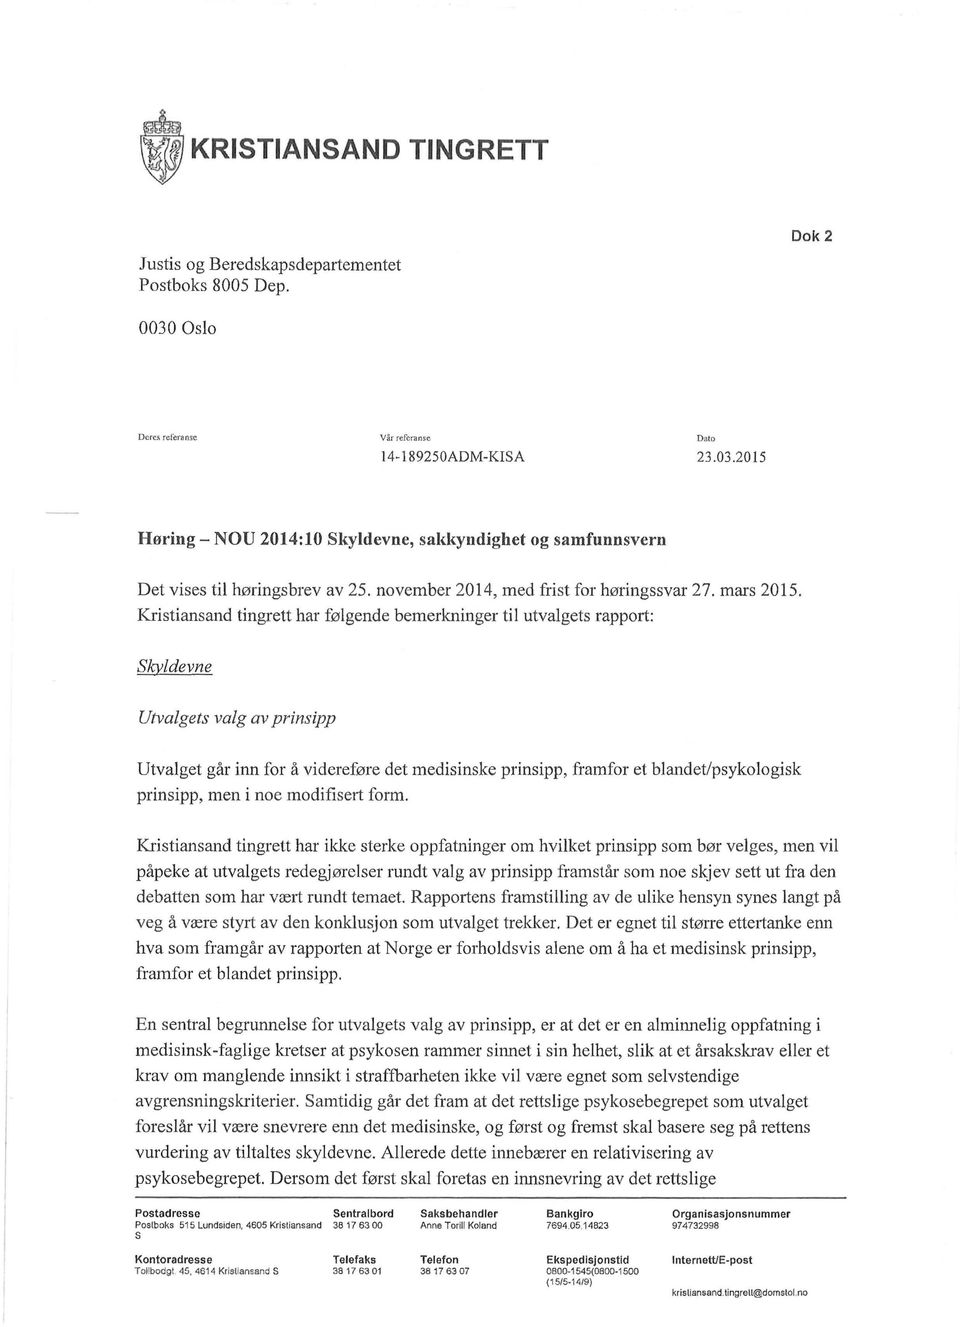 Kristiansand tingrett har følgende bemerkninger til utvalgets rapport: Skyldevne Utvalgets valg av prinsipp Utvalget går inn for å videreføre det medisinske prinsipp, framfor et blandet/psykologisk